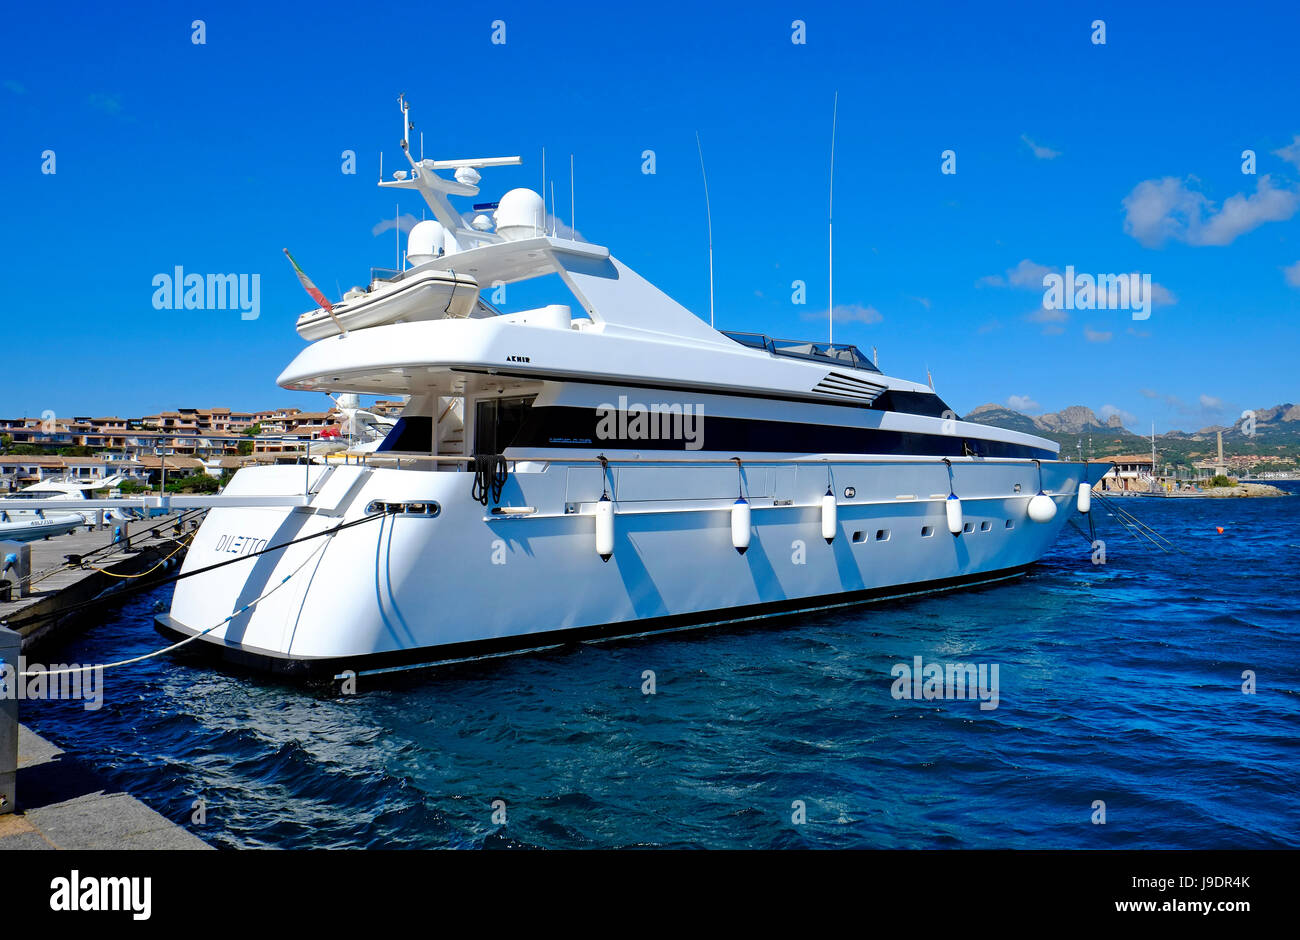 cantieri di pisa akhir luxury yacht moored at porto rotondo harbour, sardinia, italy Stock Photo